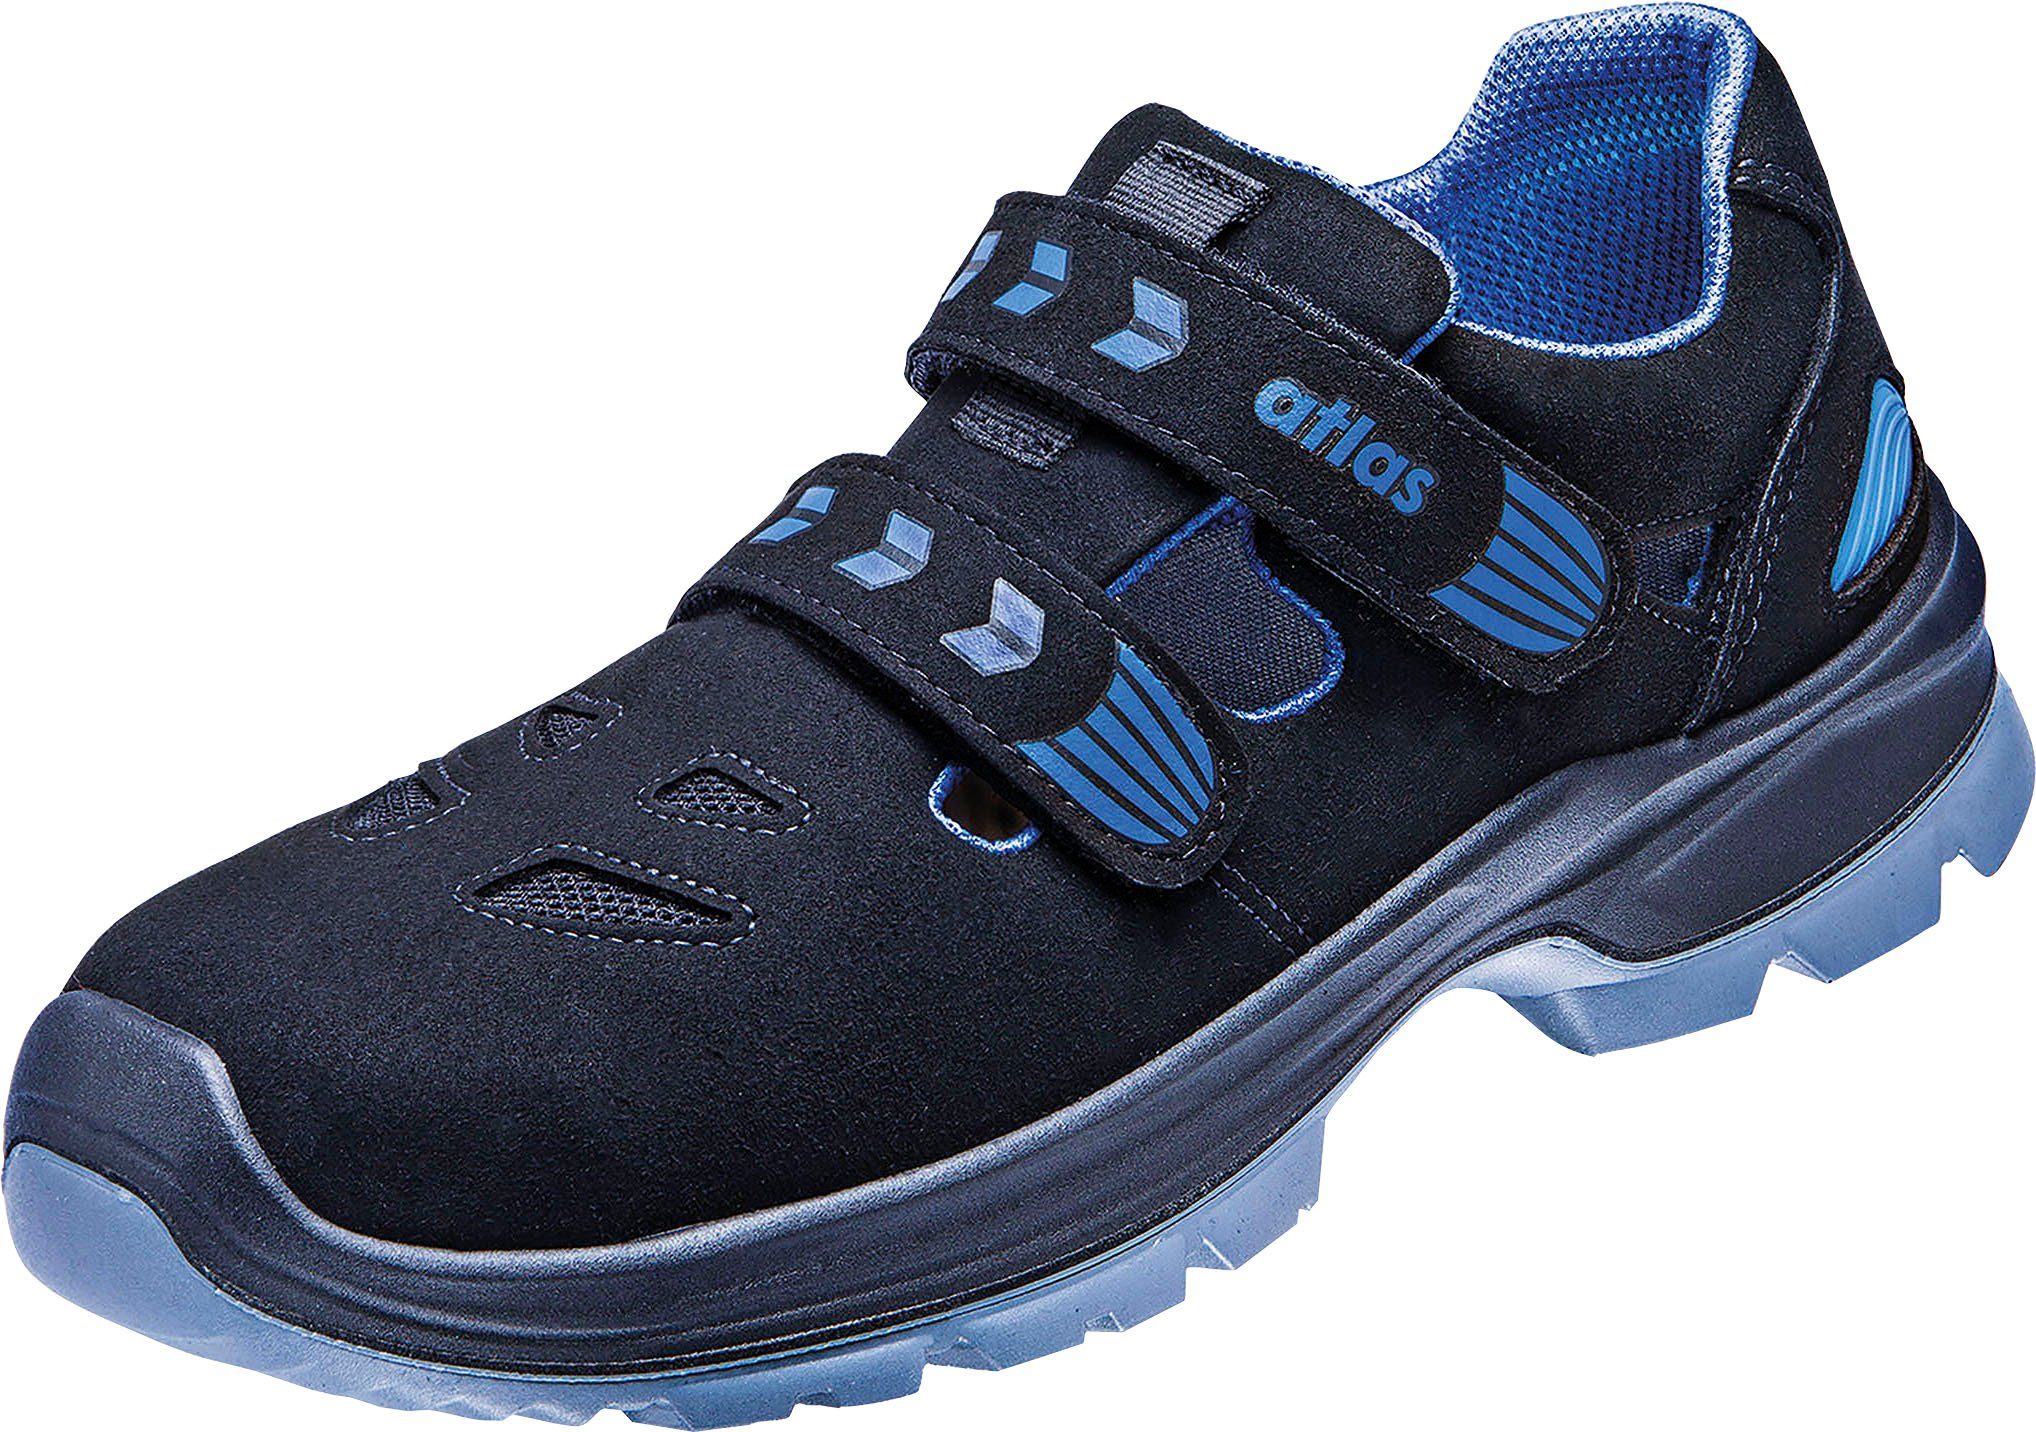 Atlas Schuhe Ergo-Med 12, Sandale, S1 360 Sicherheitsklasse Sicherheitsschuh Schuhweite